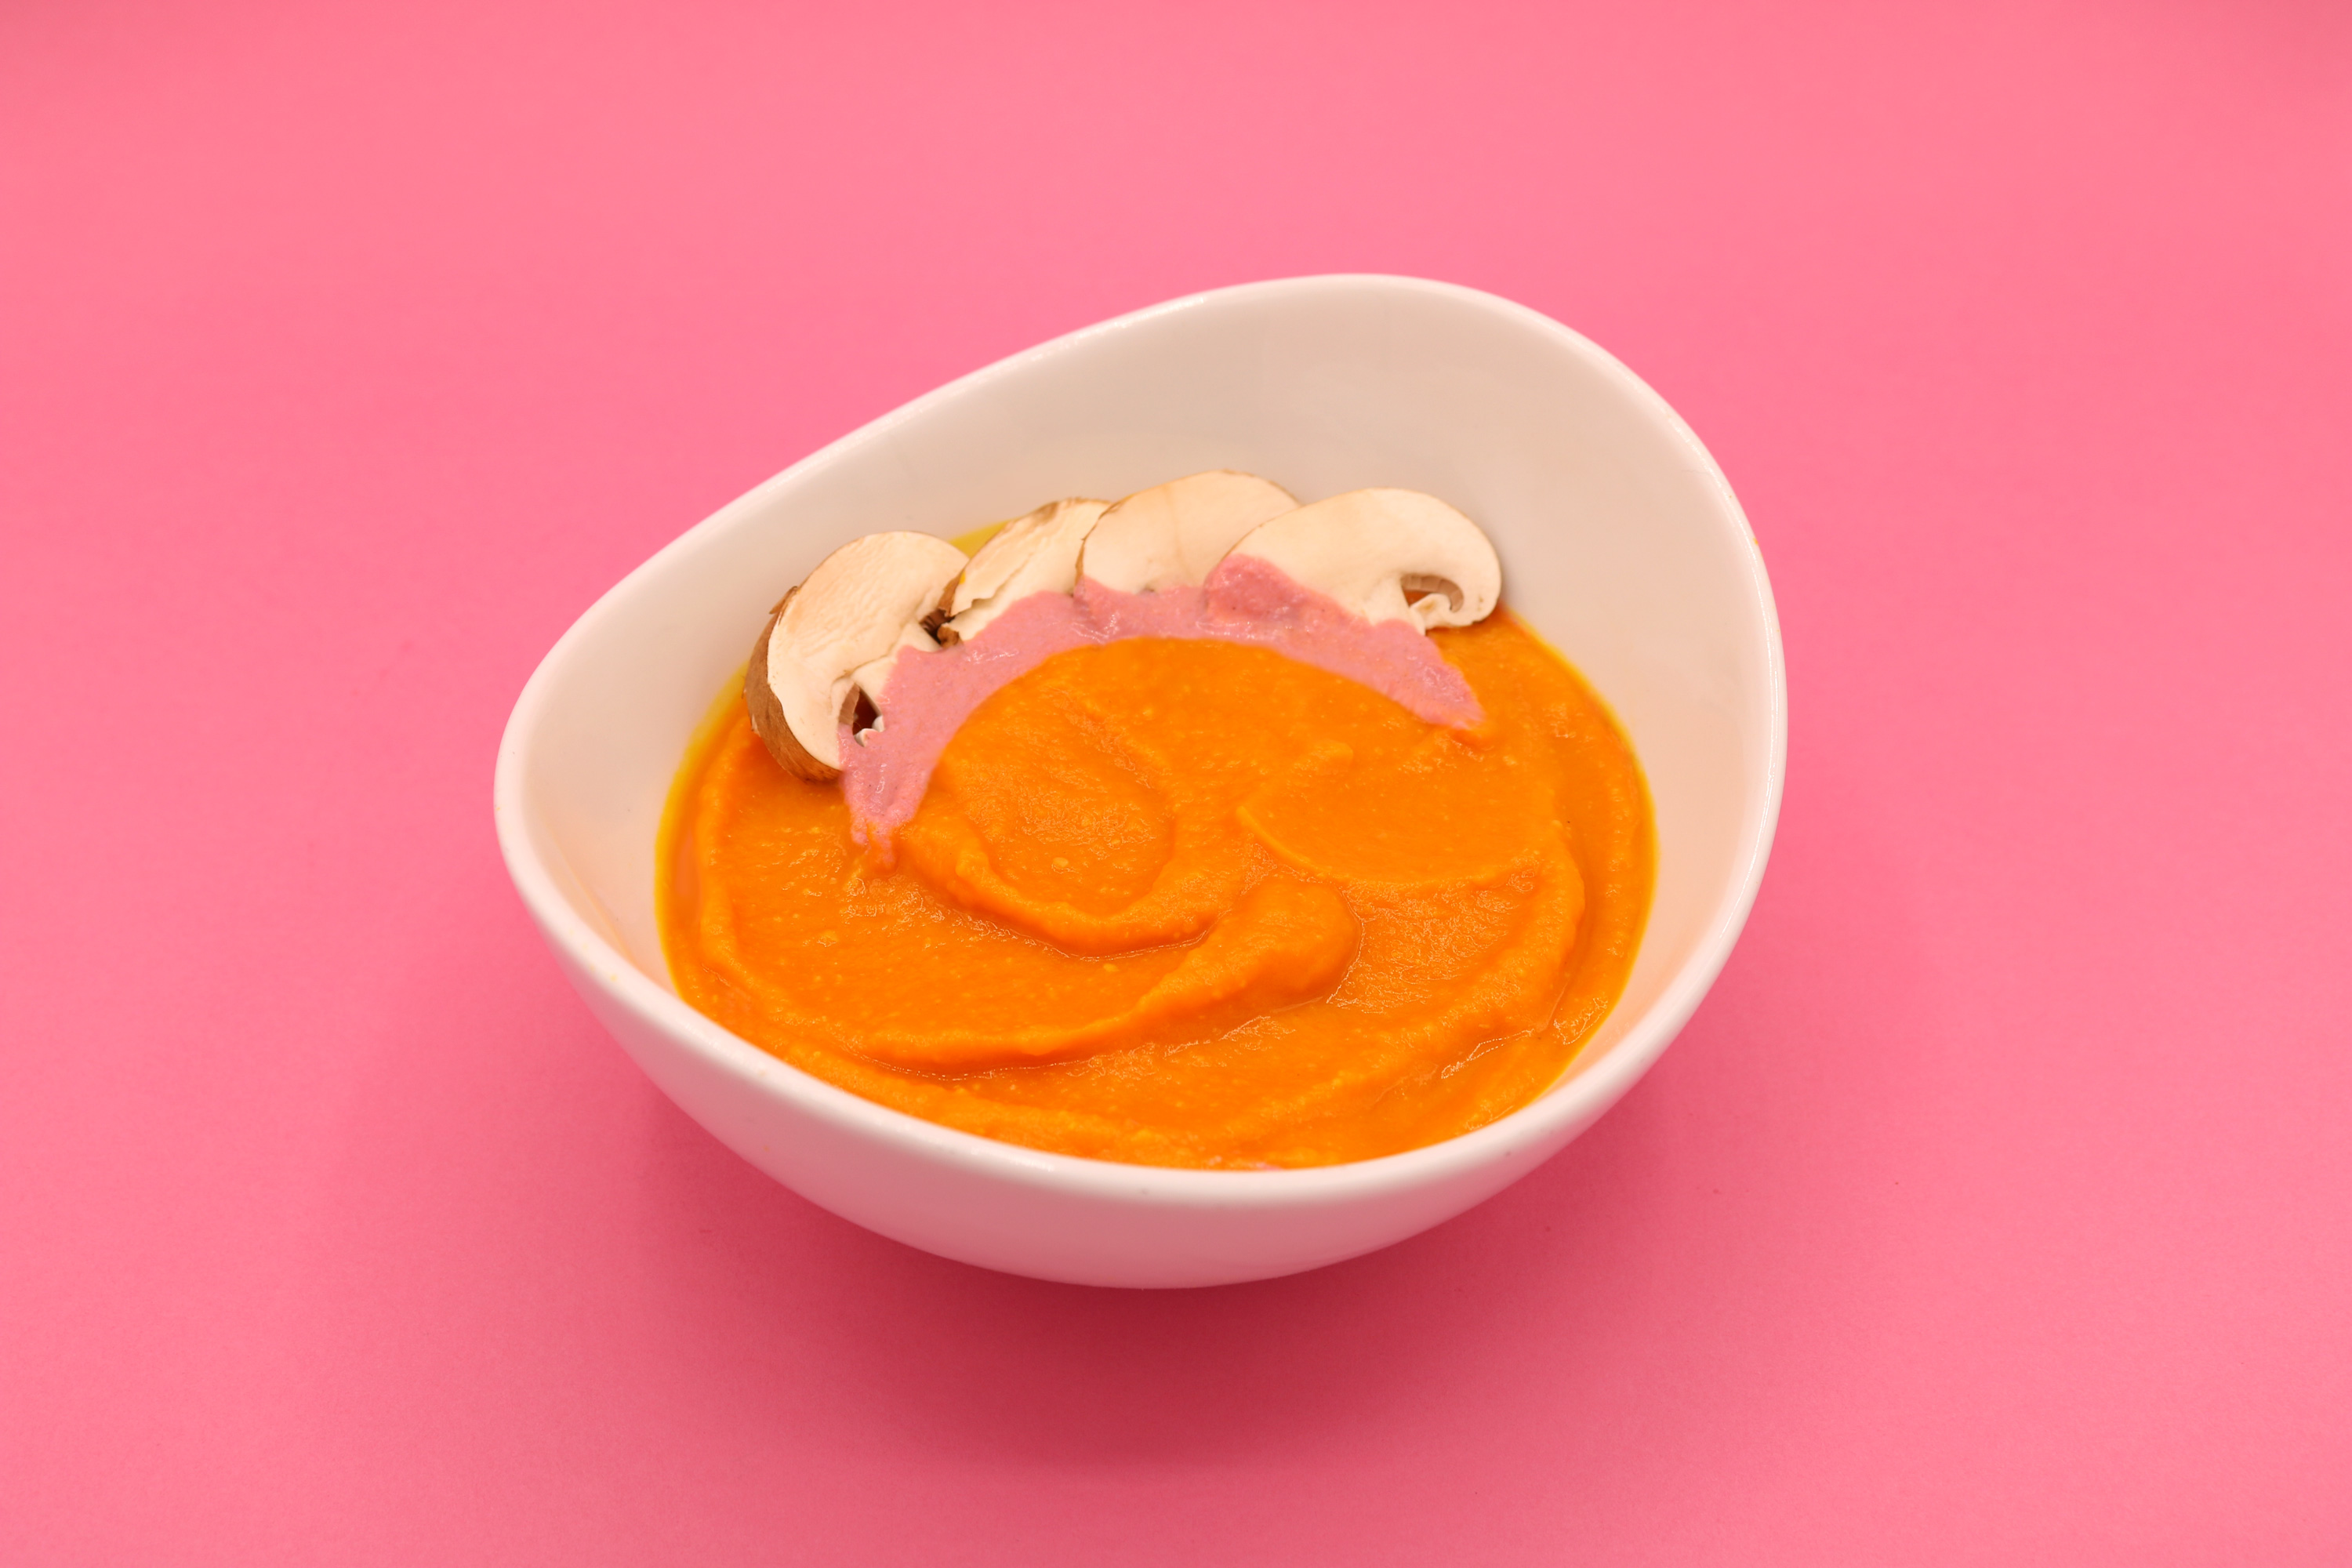 Crema de calabaza, zanahoria y DeepDip de remolacha. ⁠